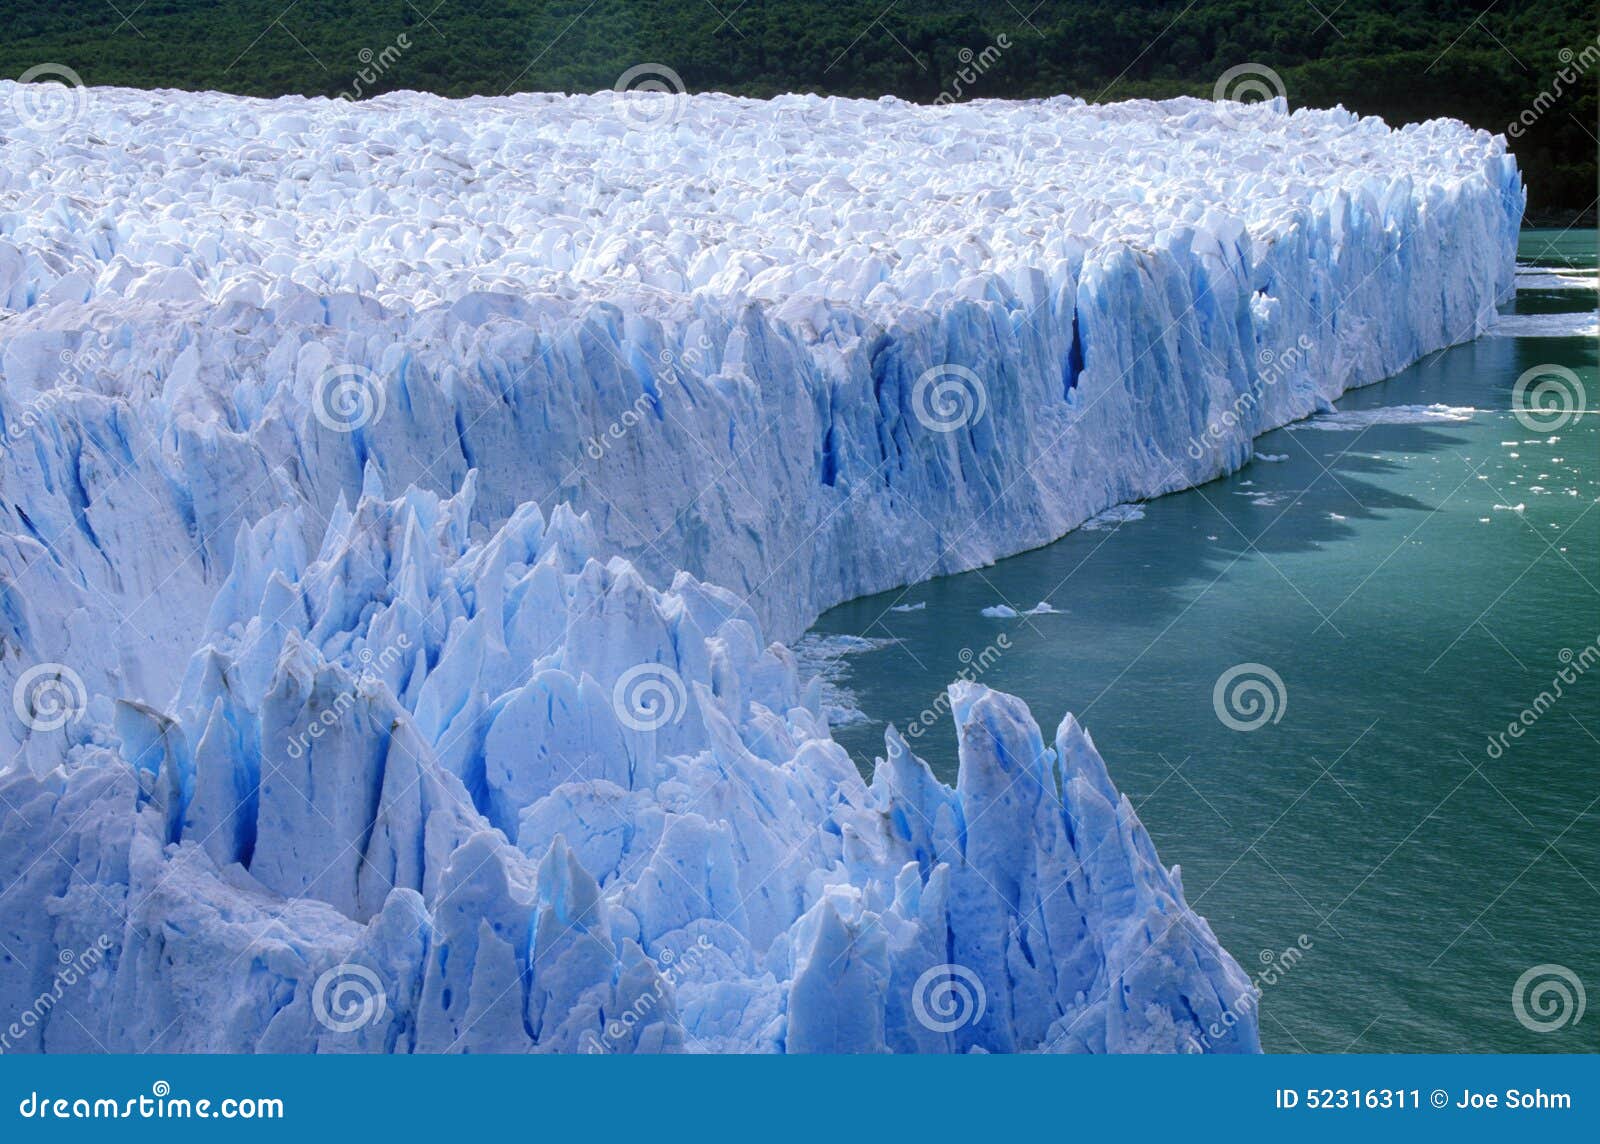 icy formations of perito moreno glacier at canal de tempanos in parque nacional las glaciares near el calafate, patagonia